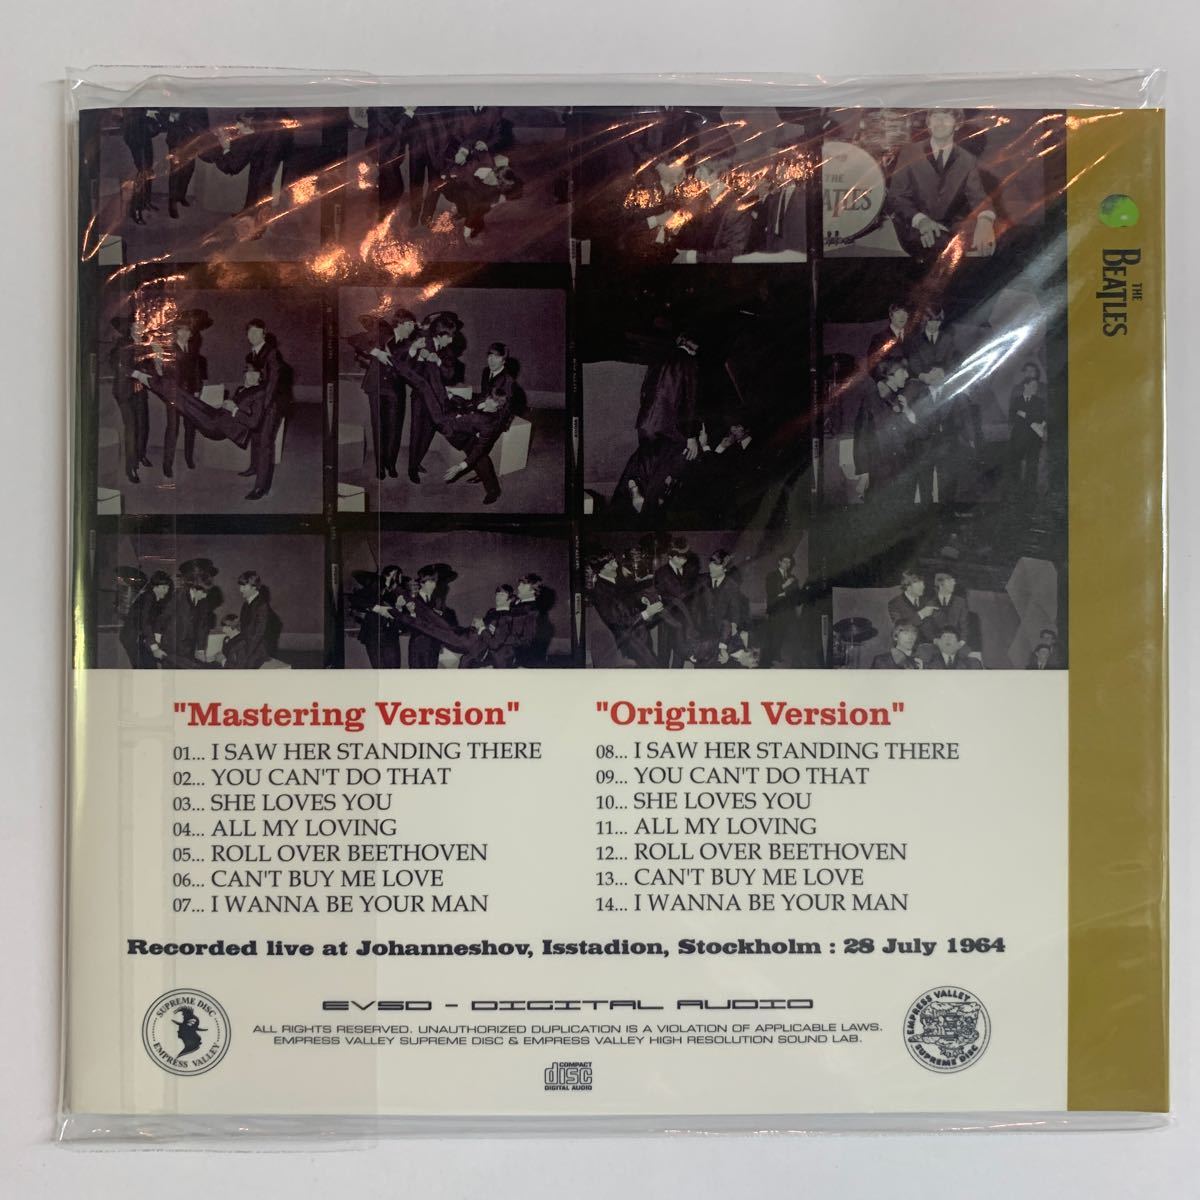 THE BEATLES / AT JOHANNESHOV (CD)1964年7月28日ストックホルム、ヨハネスホフでのライヴを収録。近年発掘された音源です。プレスCD。_画像2